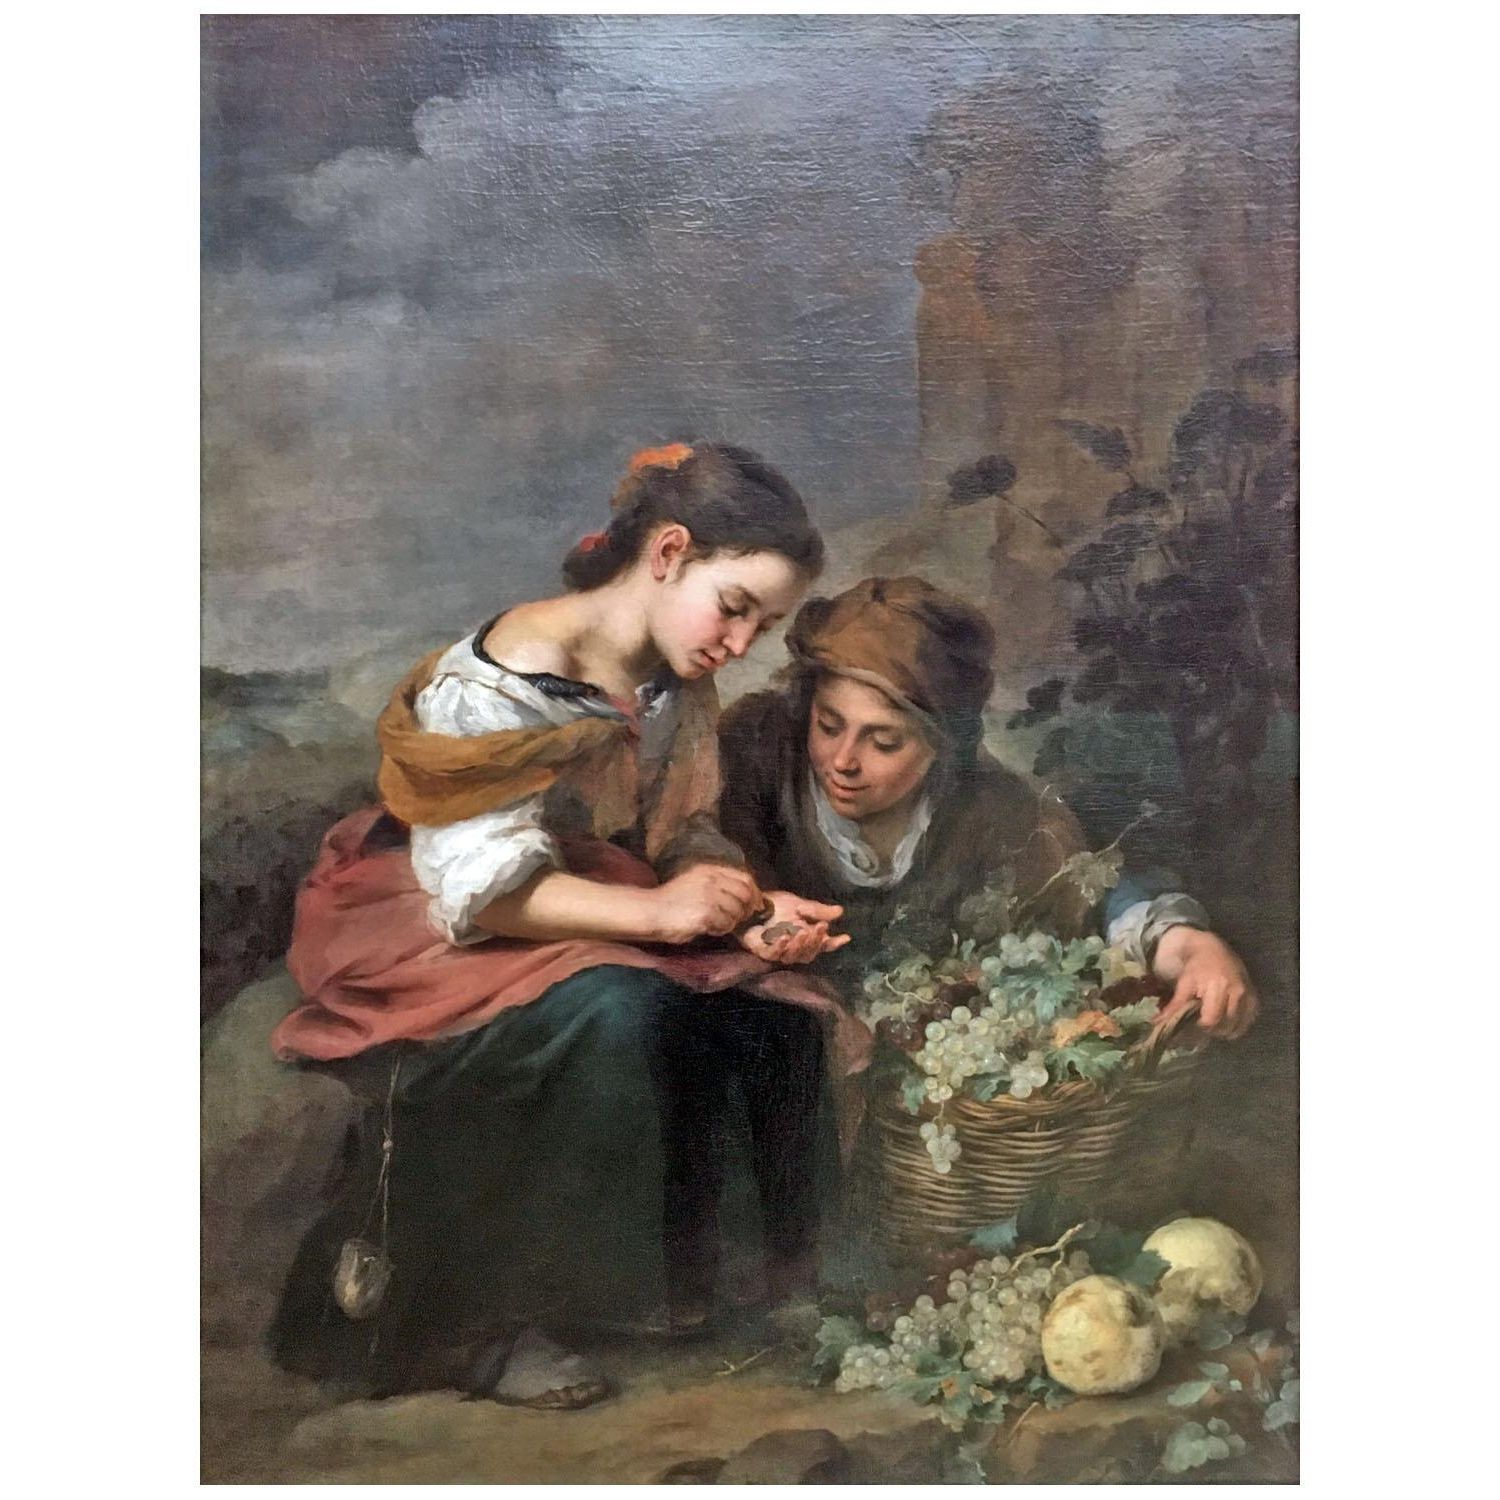 Bartolome Esteban Murillo. Vendedores de fruta. 1670. Alte Pinakothek Munchen